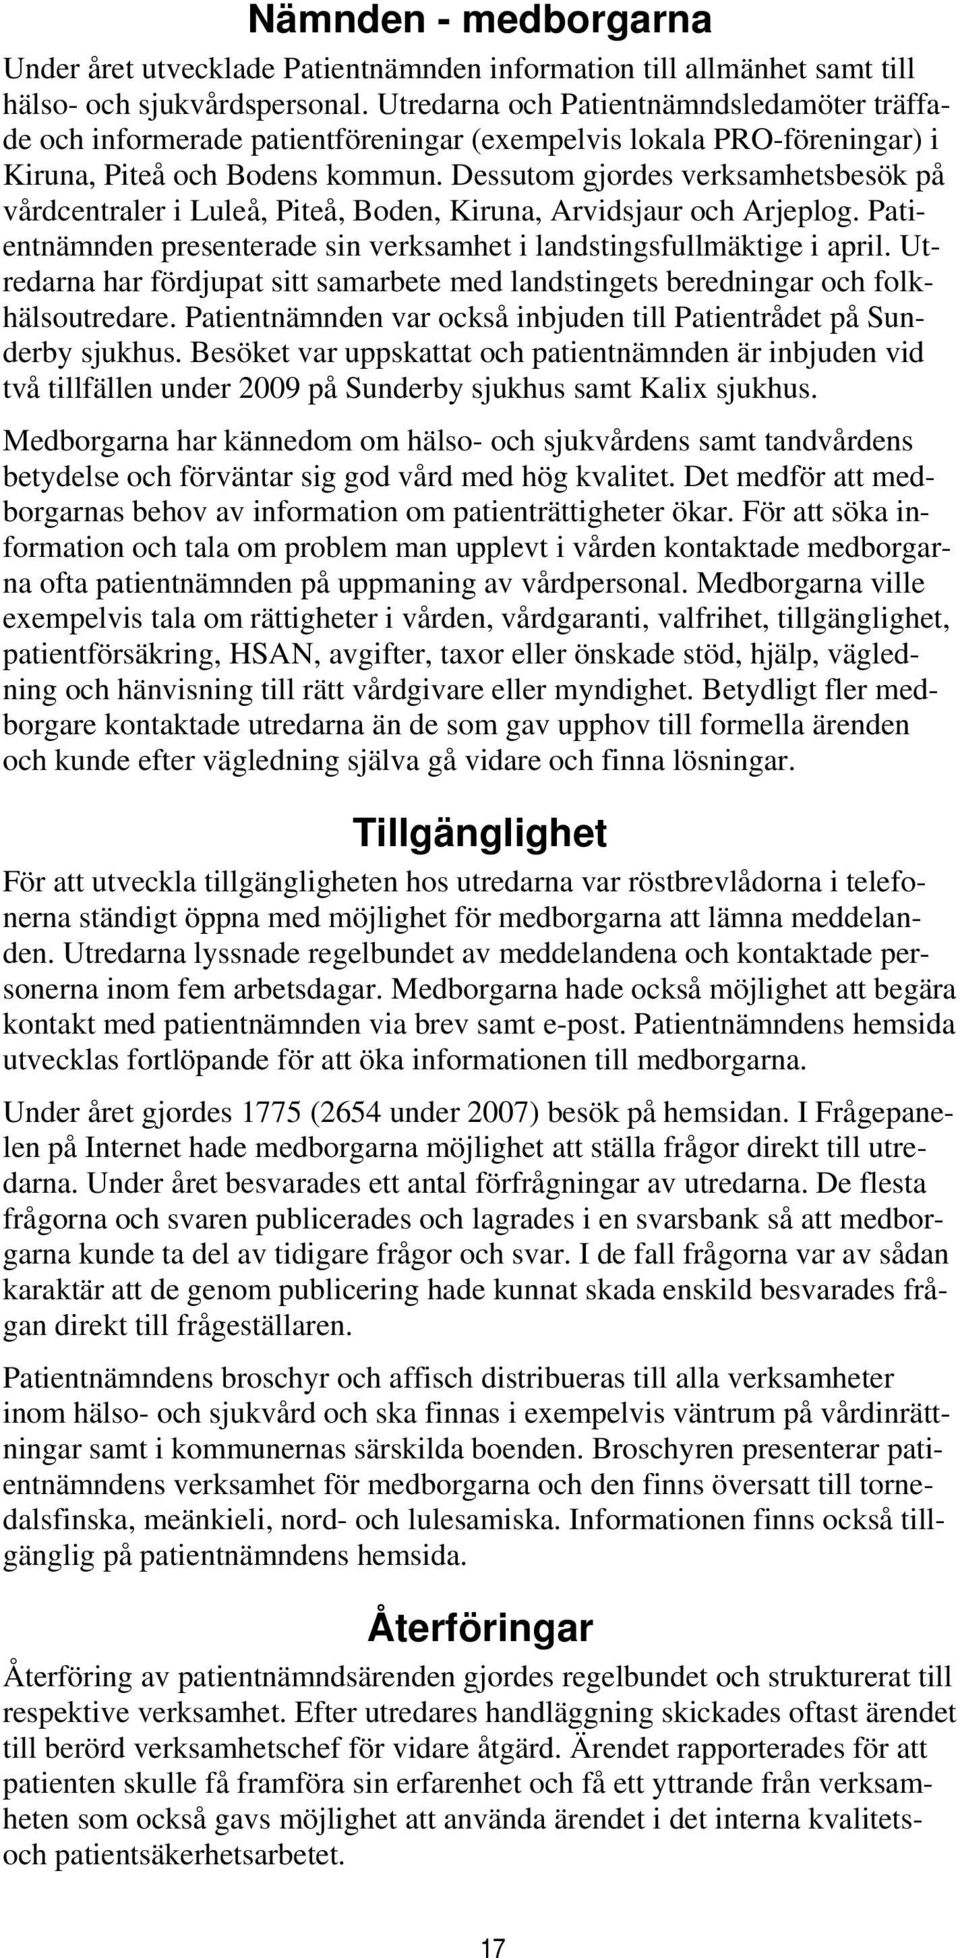 Dessutom gjordes verksamhetsbesök på vårdcentraler i Luleå, Piteå, Boden, Kiruna, Arvidsjaur och Arjeplog. Patientnämnden presenterade sin verksamhet i landstingsfullmäktige i april.